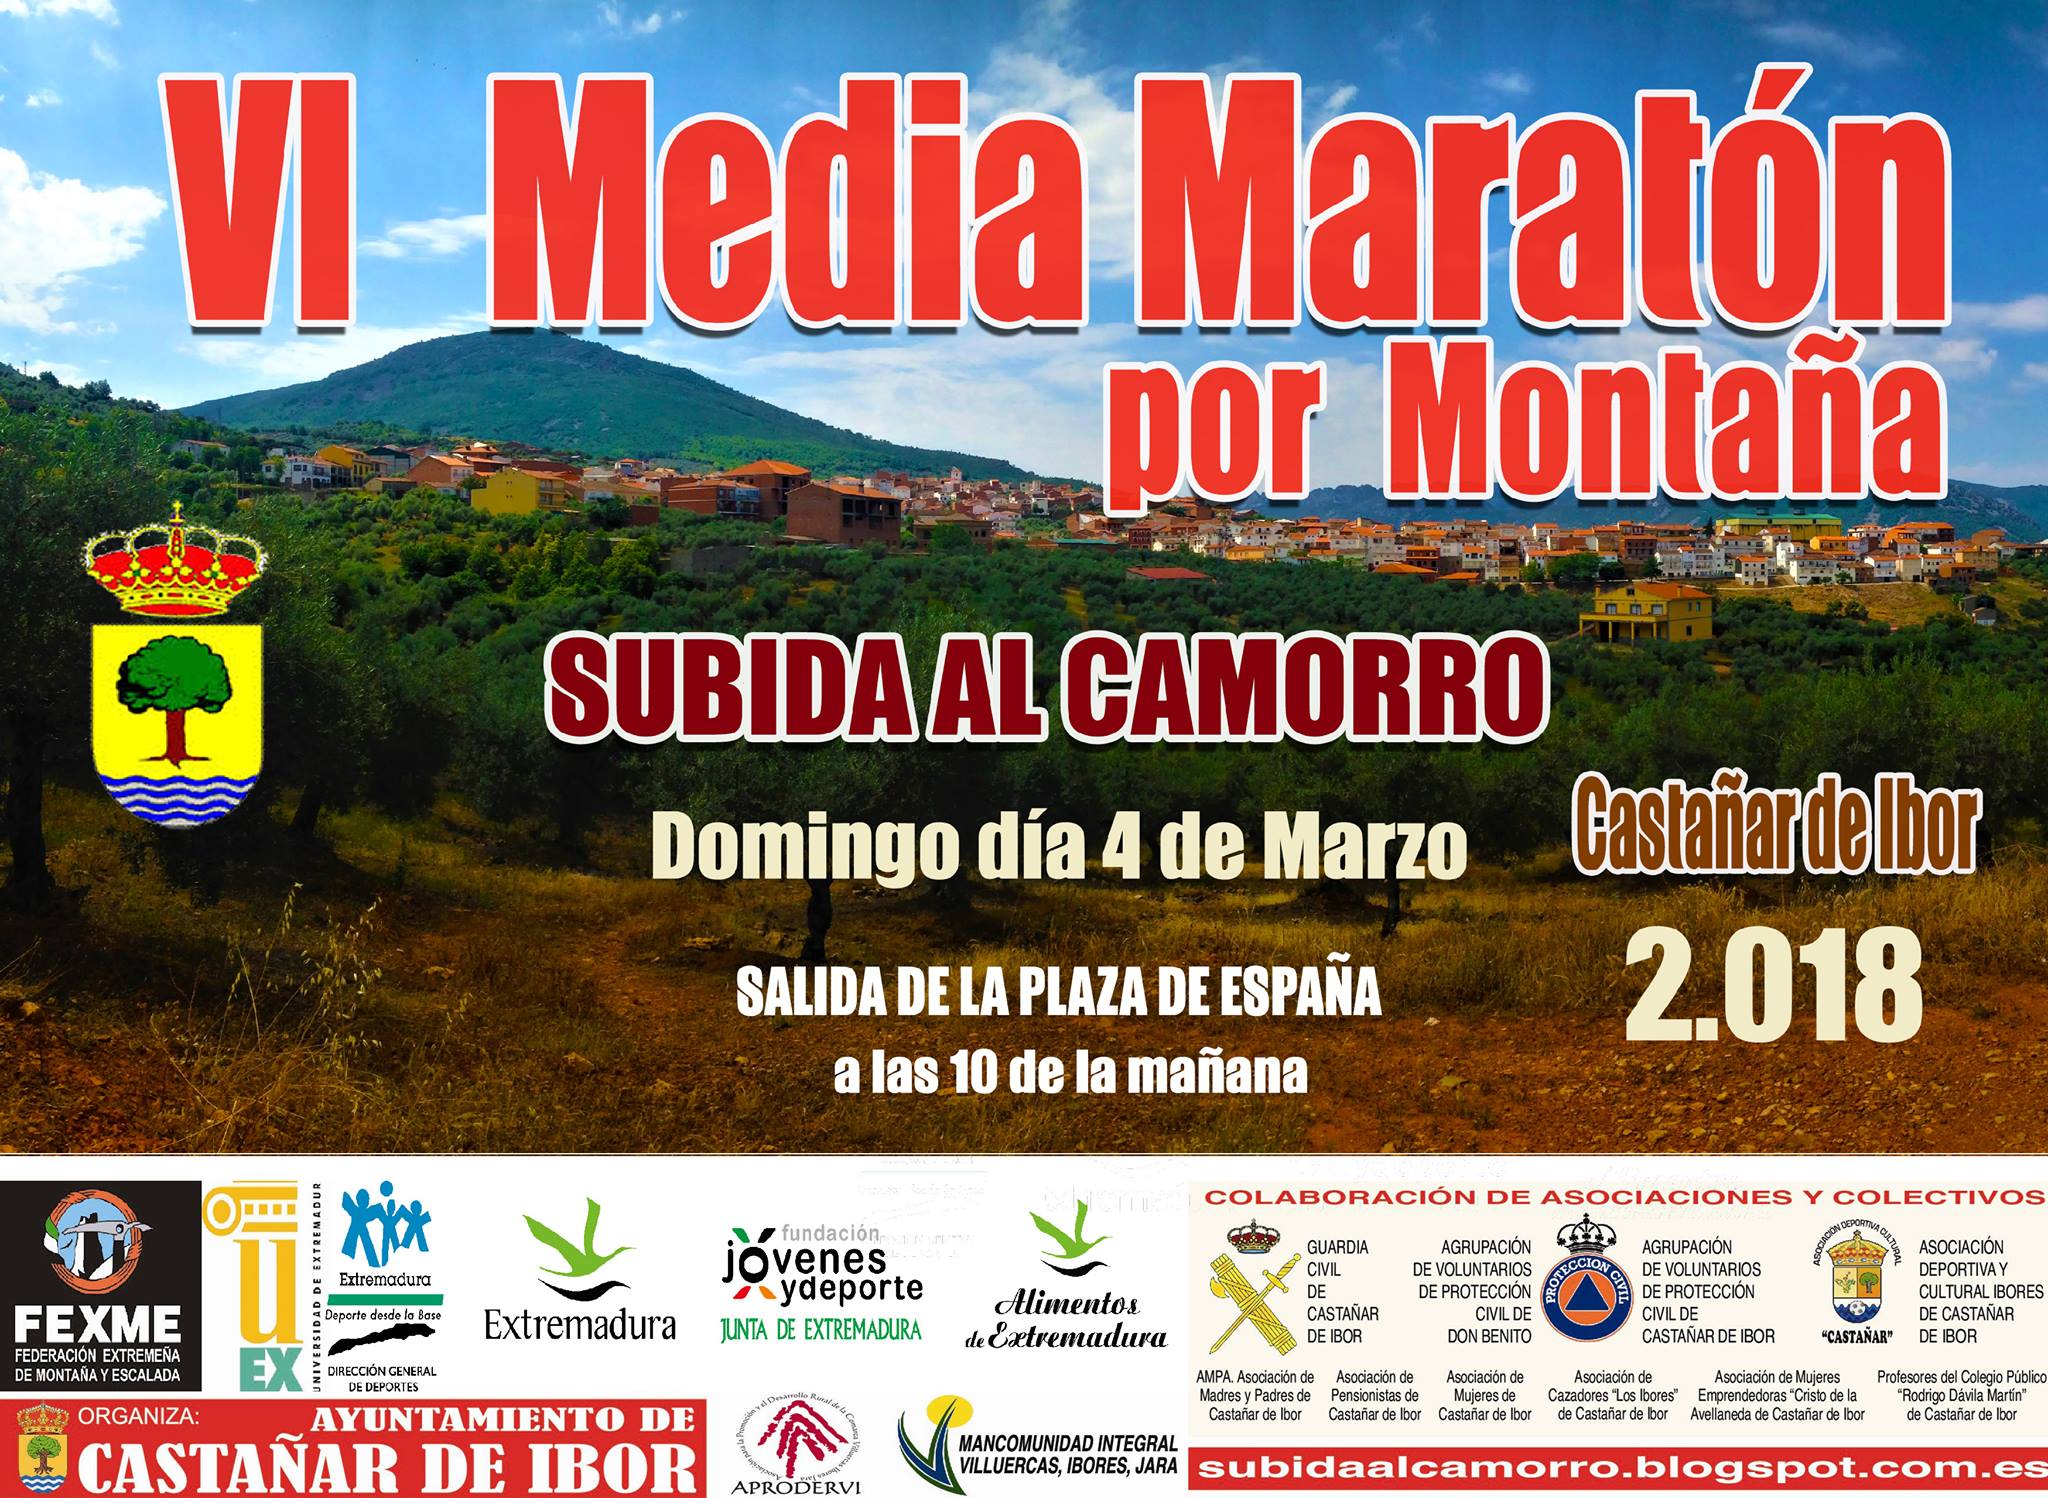 VI Media Maratón por Montaña - Castañar de Ibor